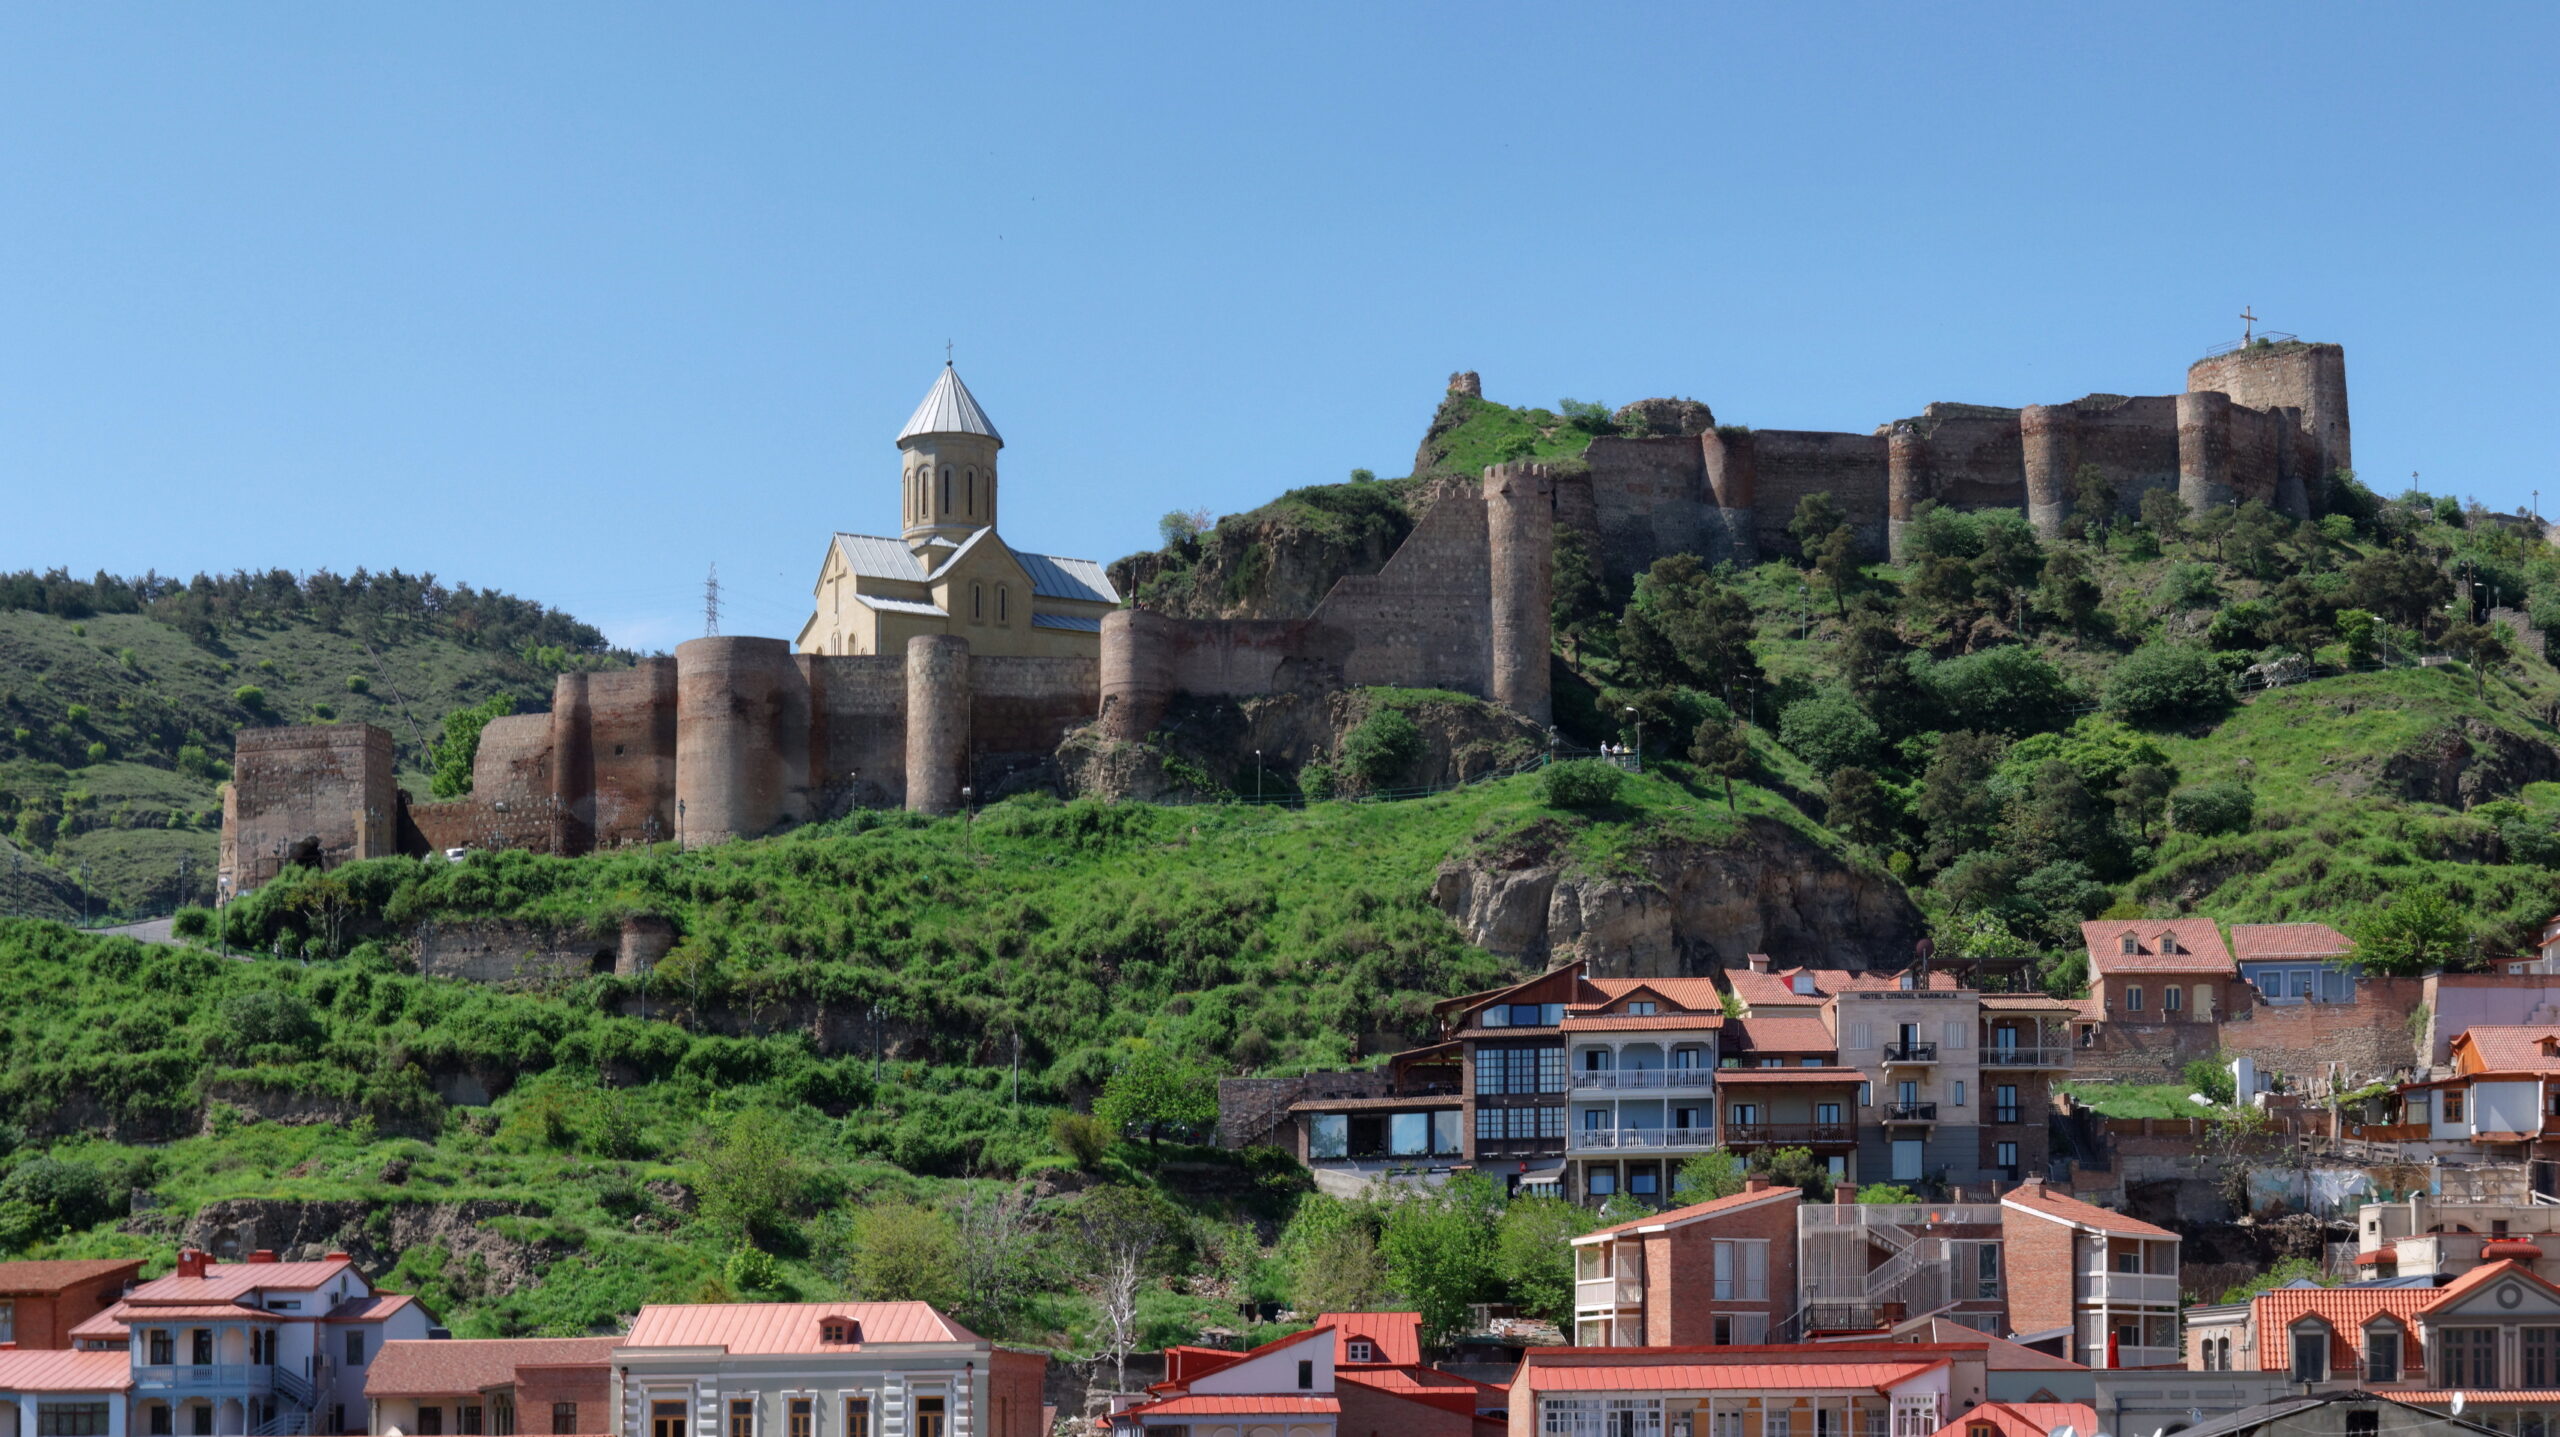 Tbilisi Old Town narikala